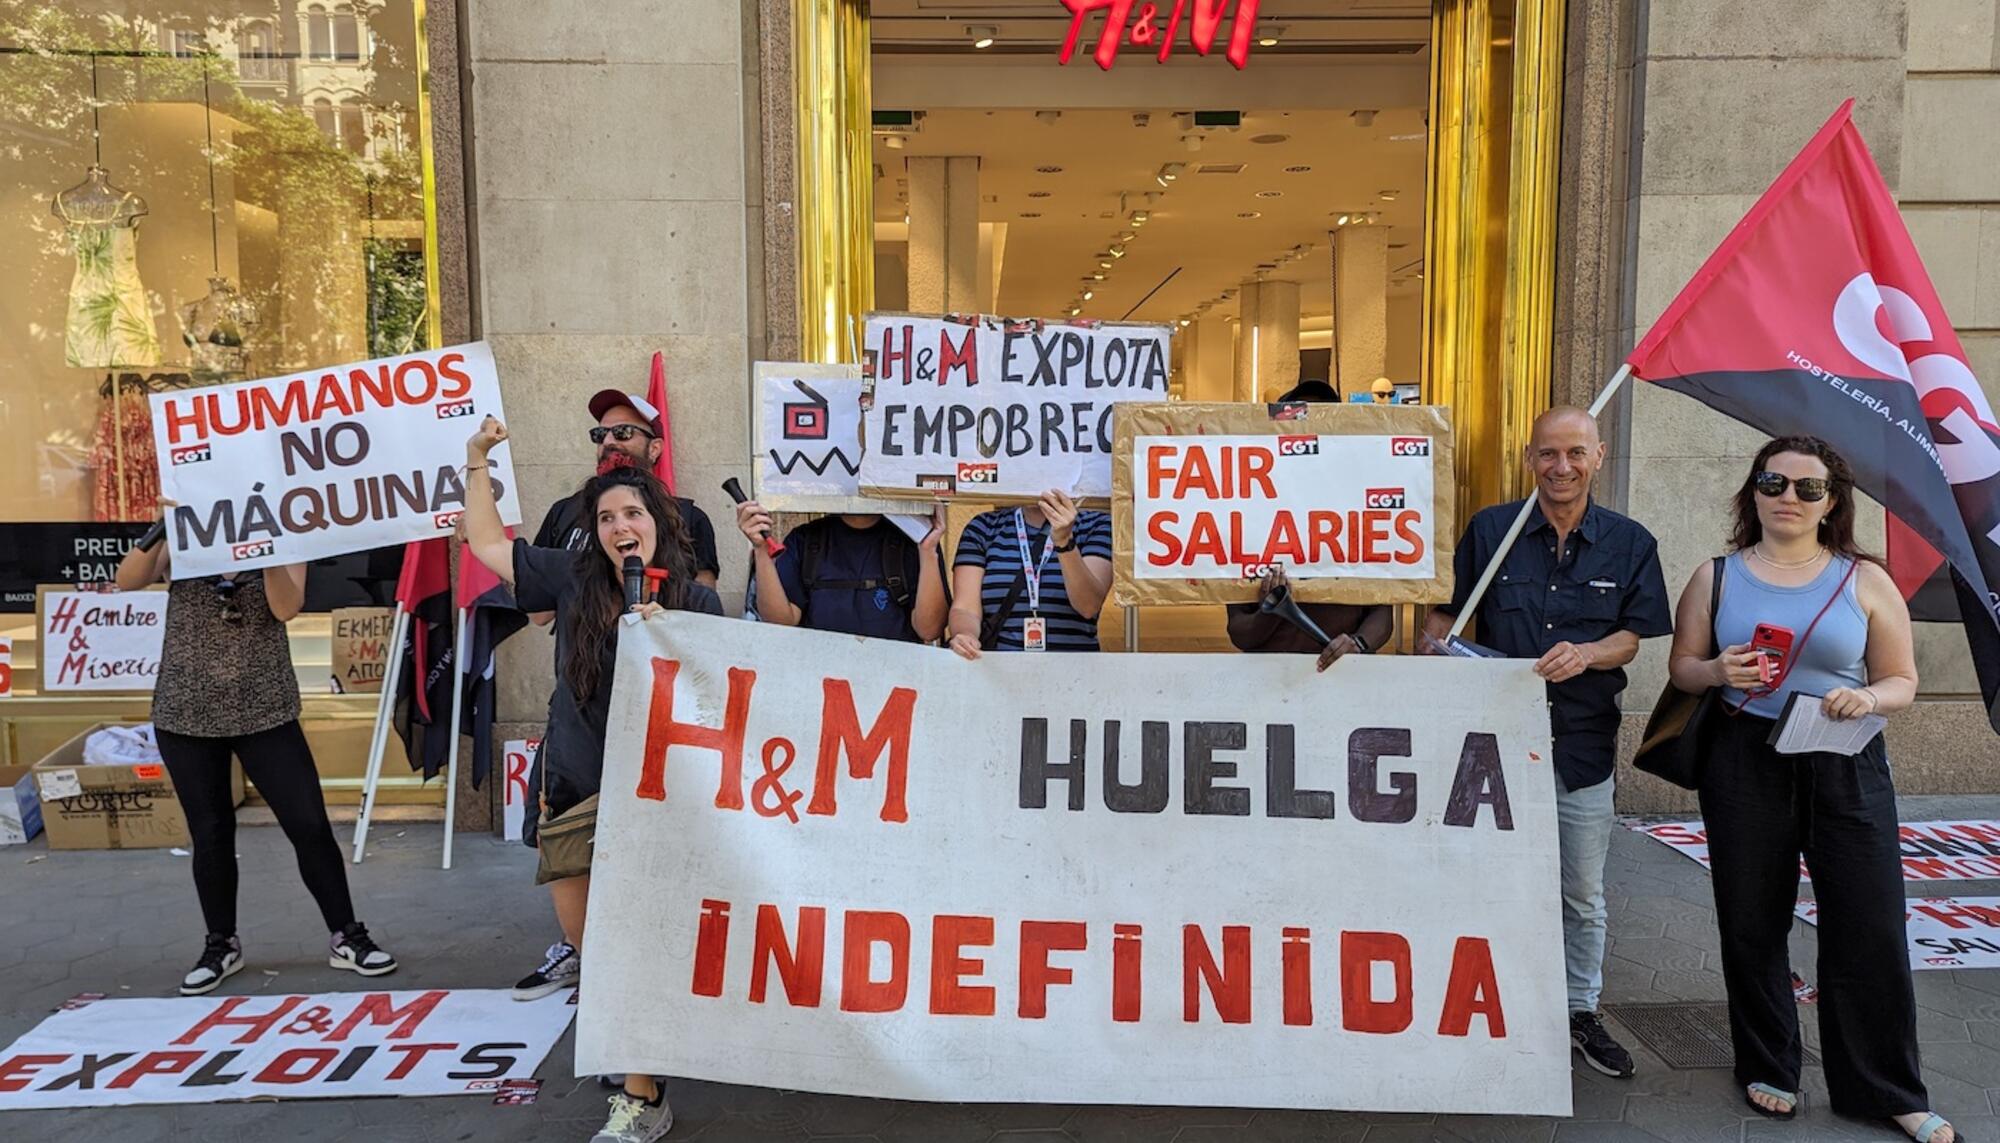 H&M huelga barcelona